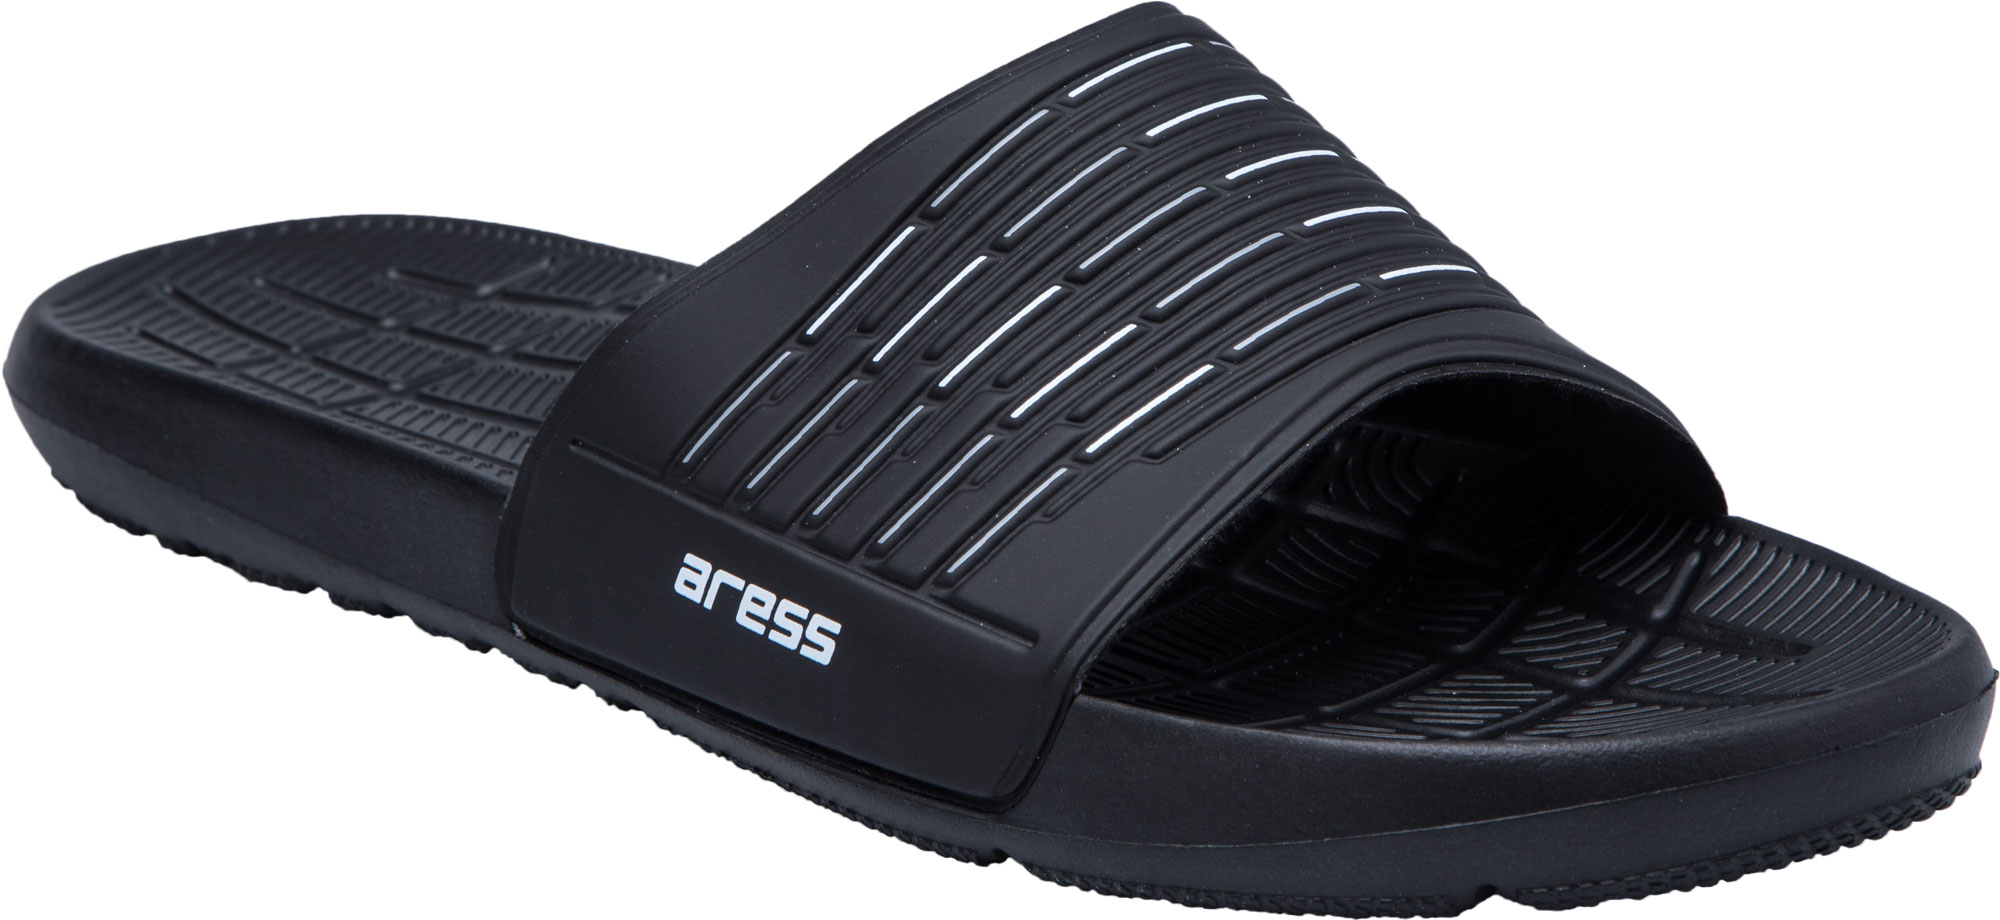 Men’s slippers